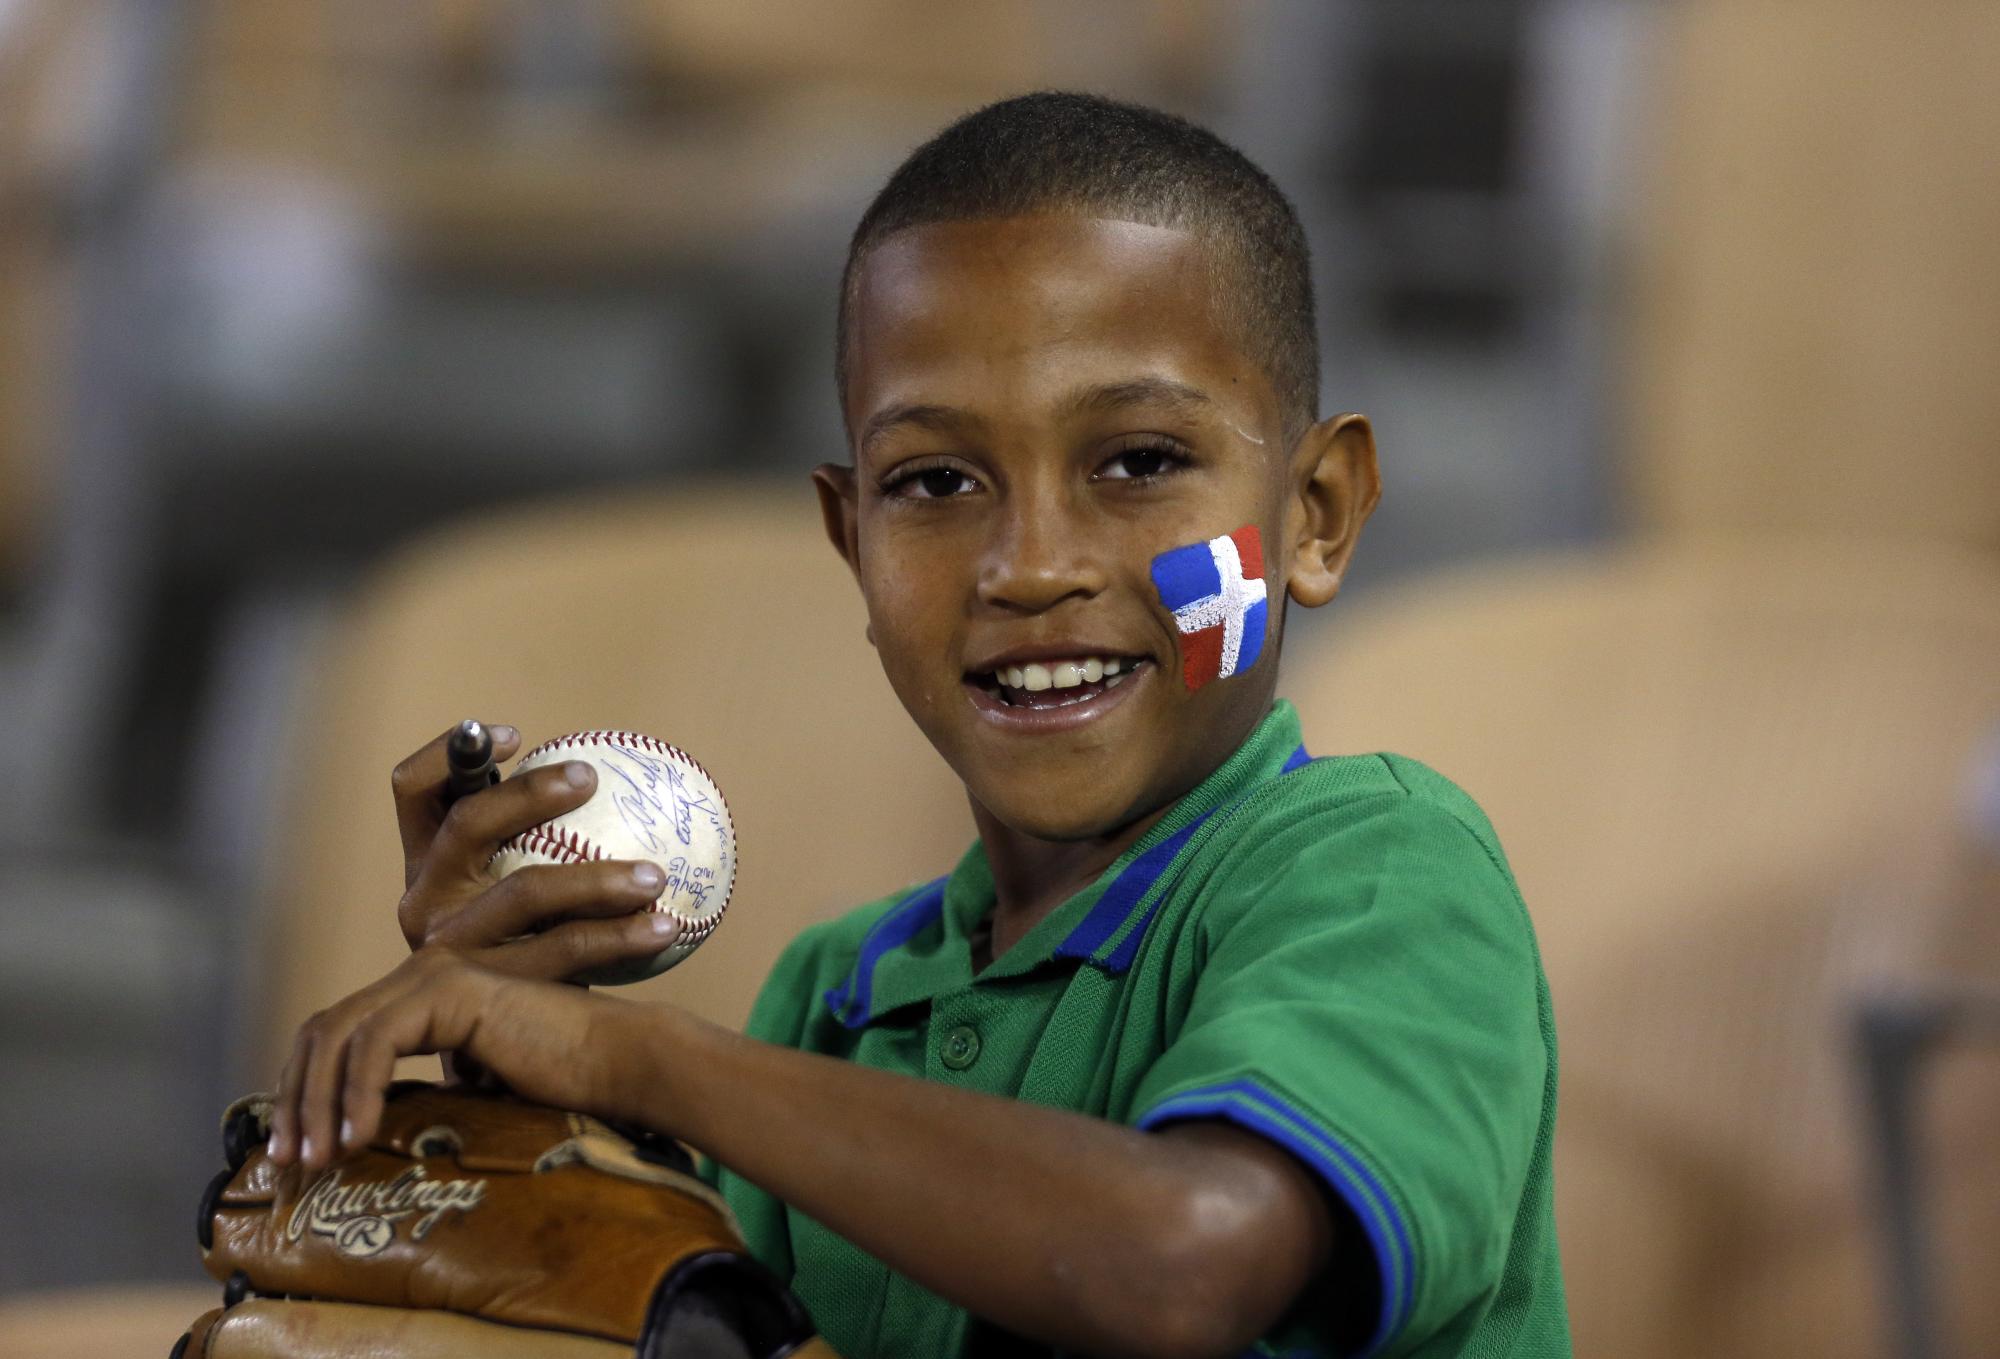 El fanático o pelotero del futuro, un niño, que sostiene bola autografiada, su guante y la expresión de la dominicanidad con su bandera en la mejilla, acompañada de una inocente sonrisa.